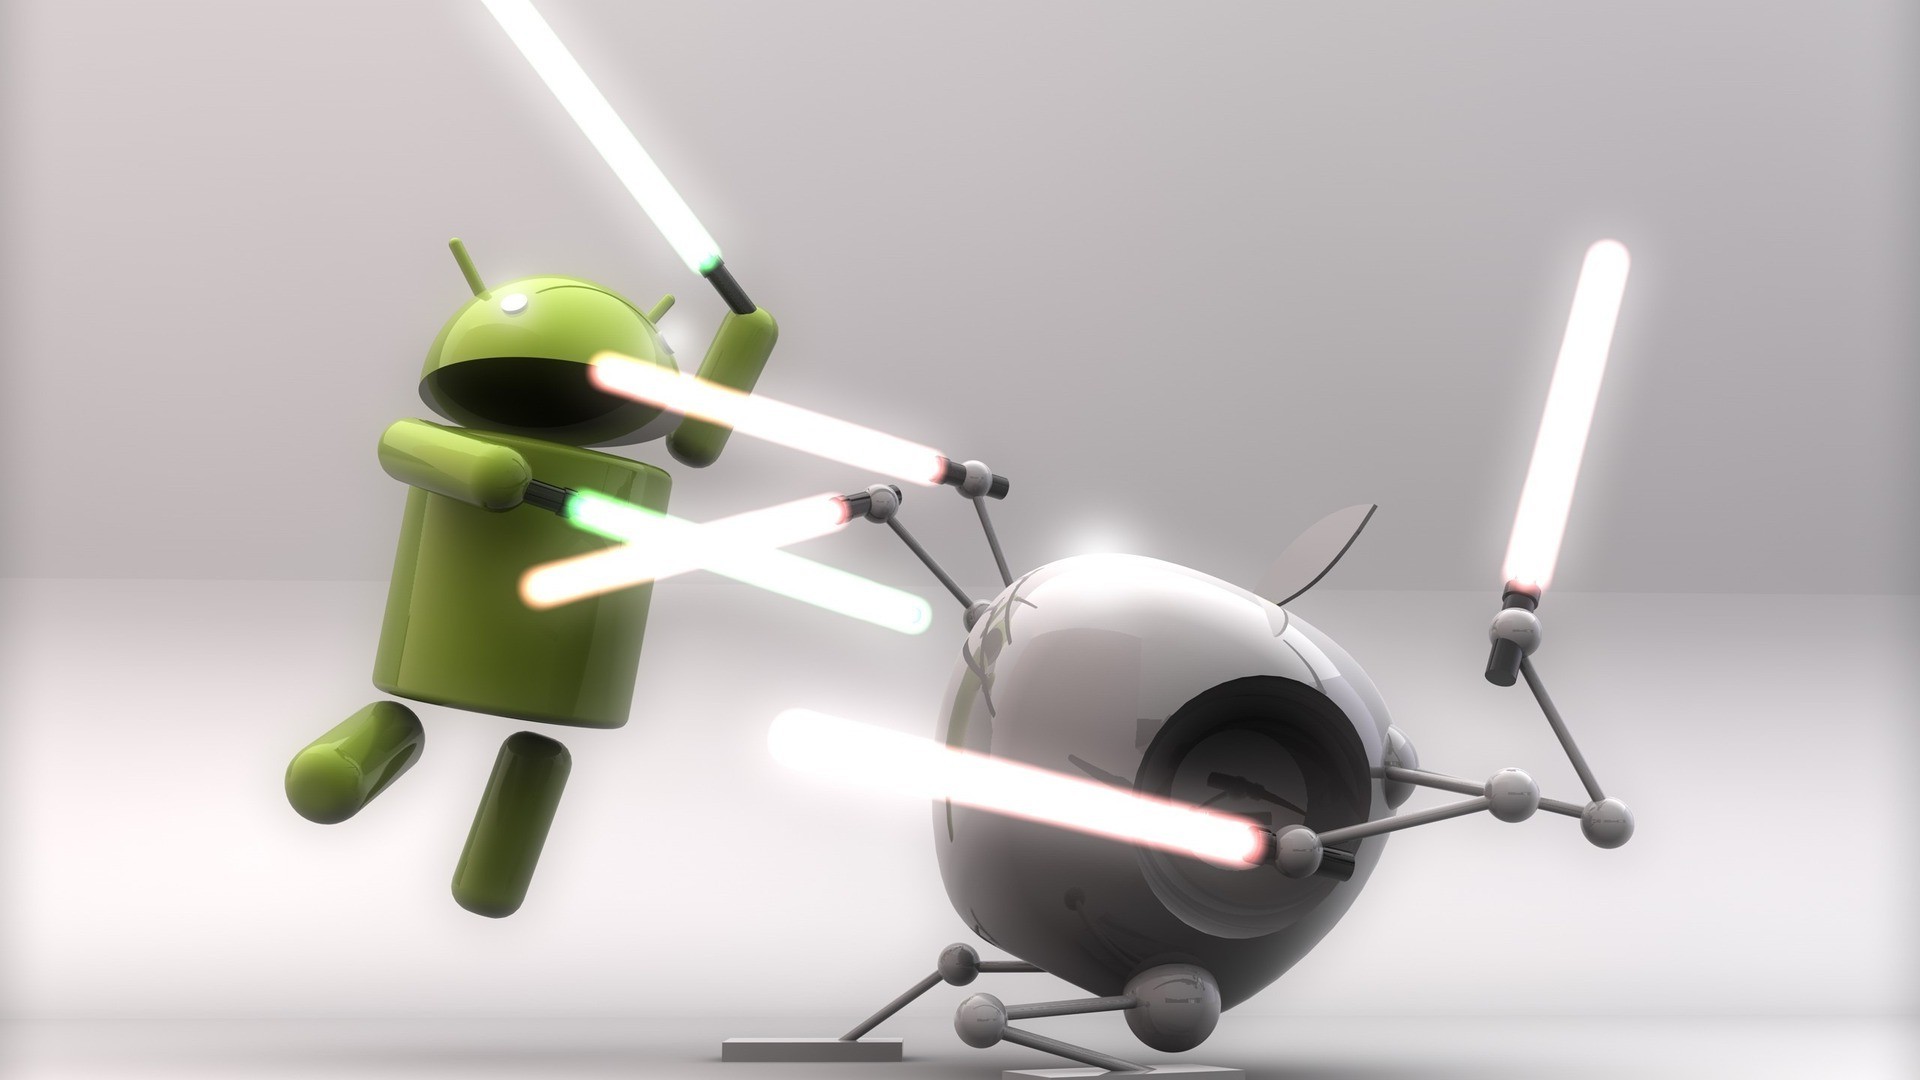 Android (operating System), Lightsaber, Digital Art, Star Wars Wallpaper